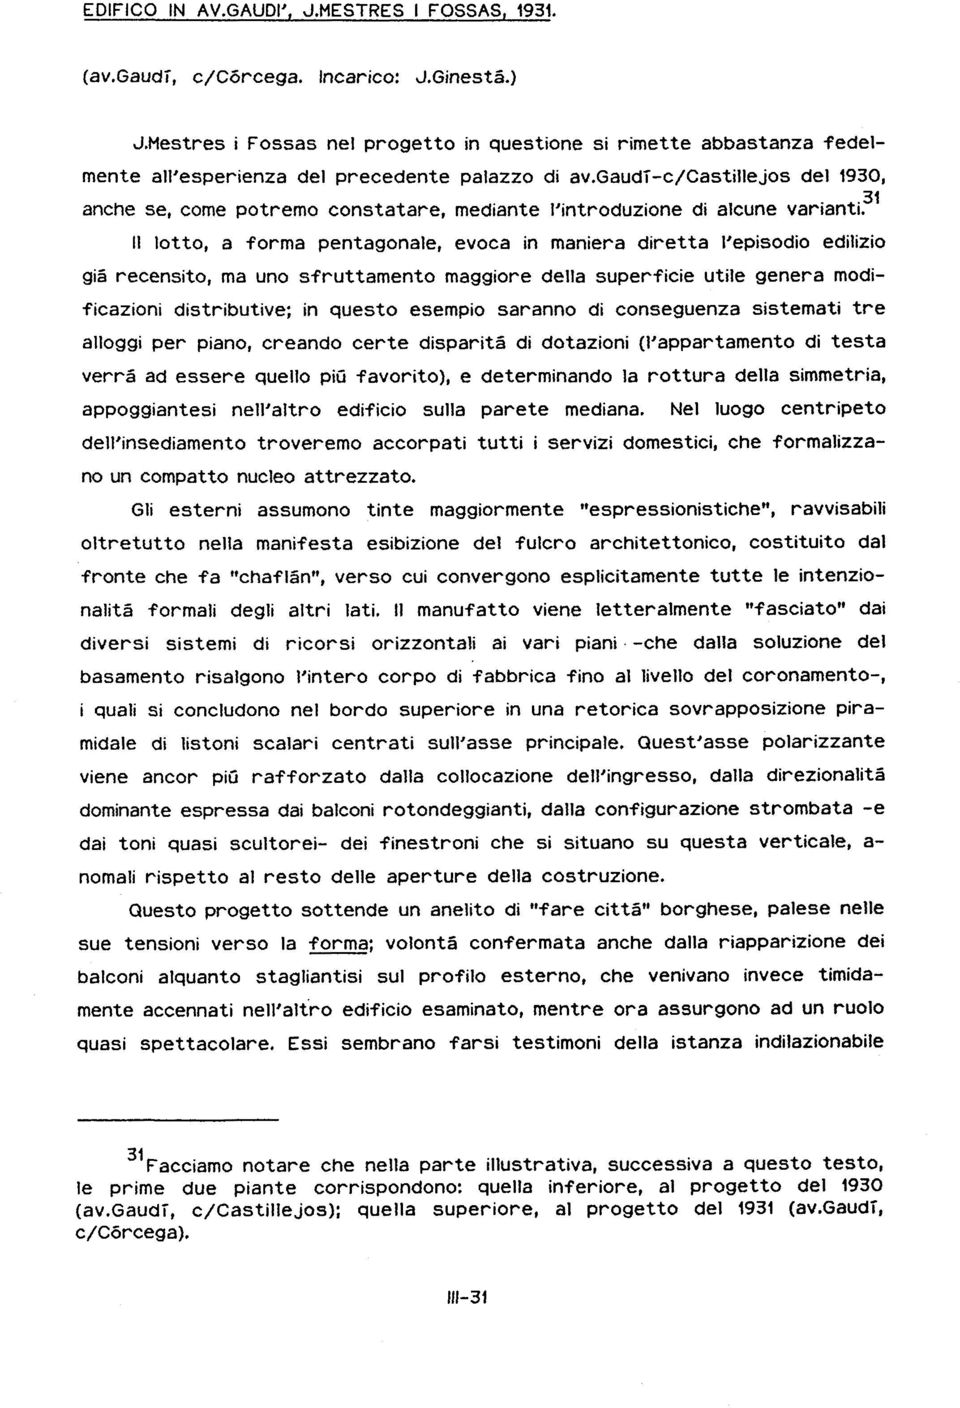 gaudì-c/castillejos del 1930, anche se, come potremo constatare, mediante l'introduzione di alcune varianti.